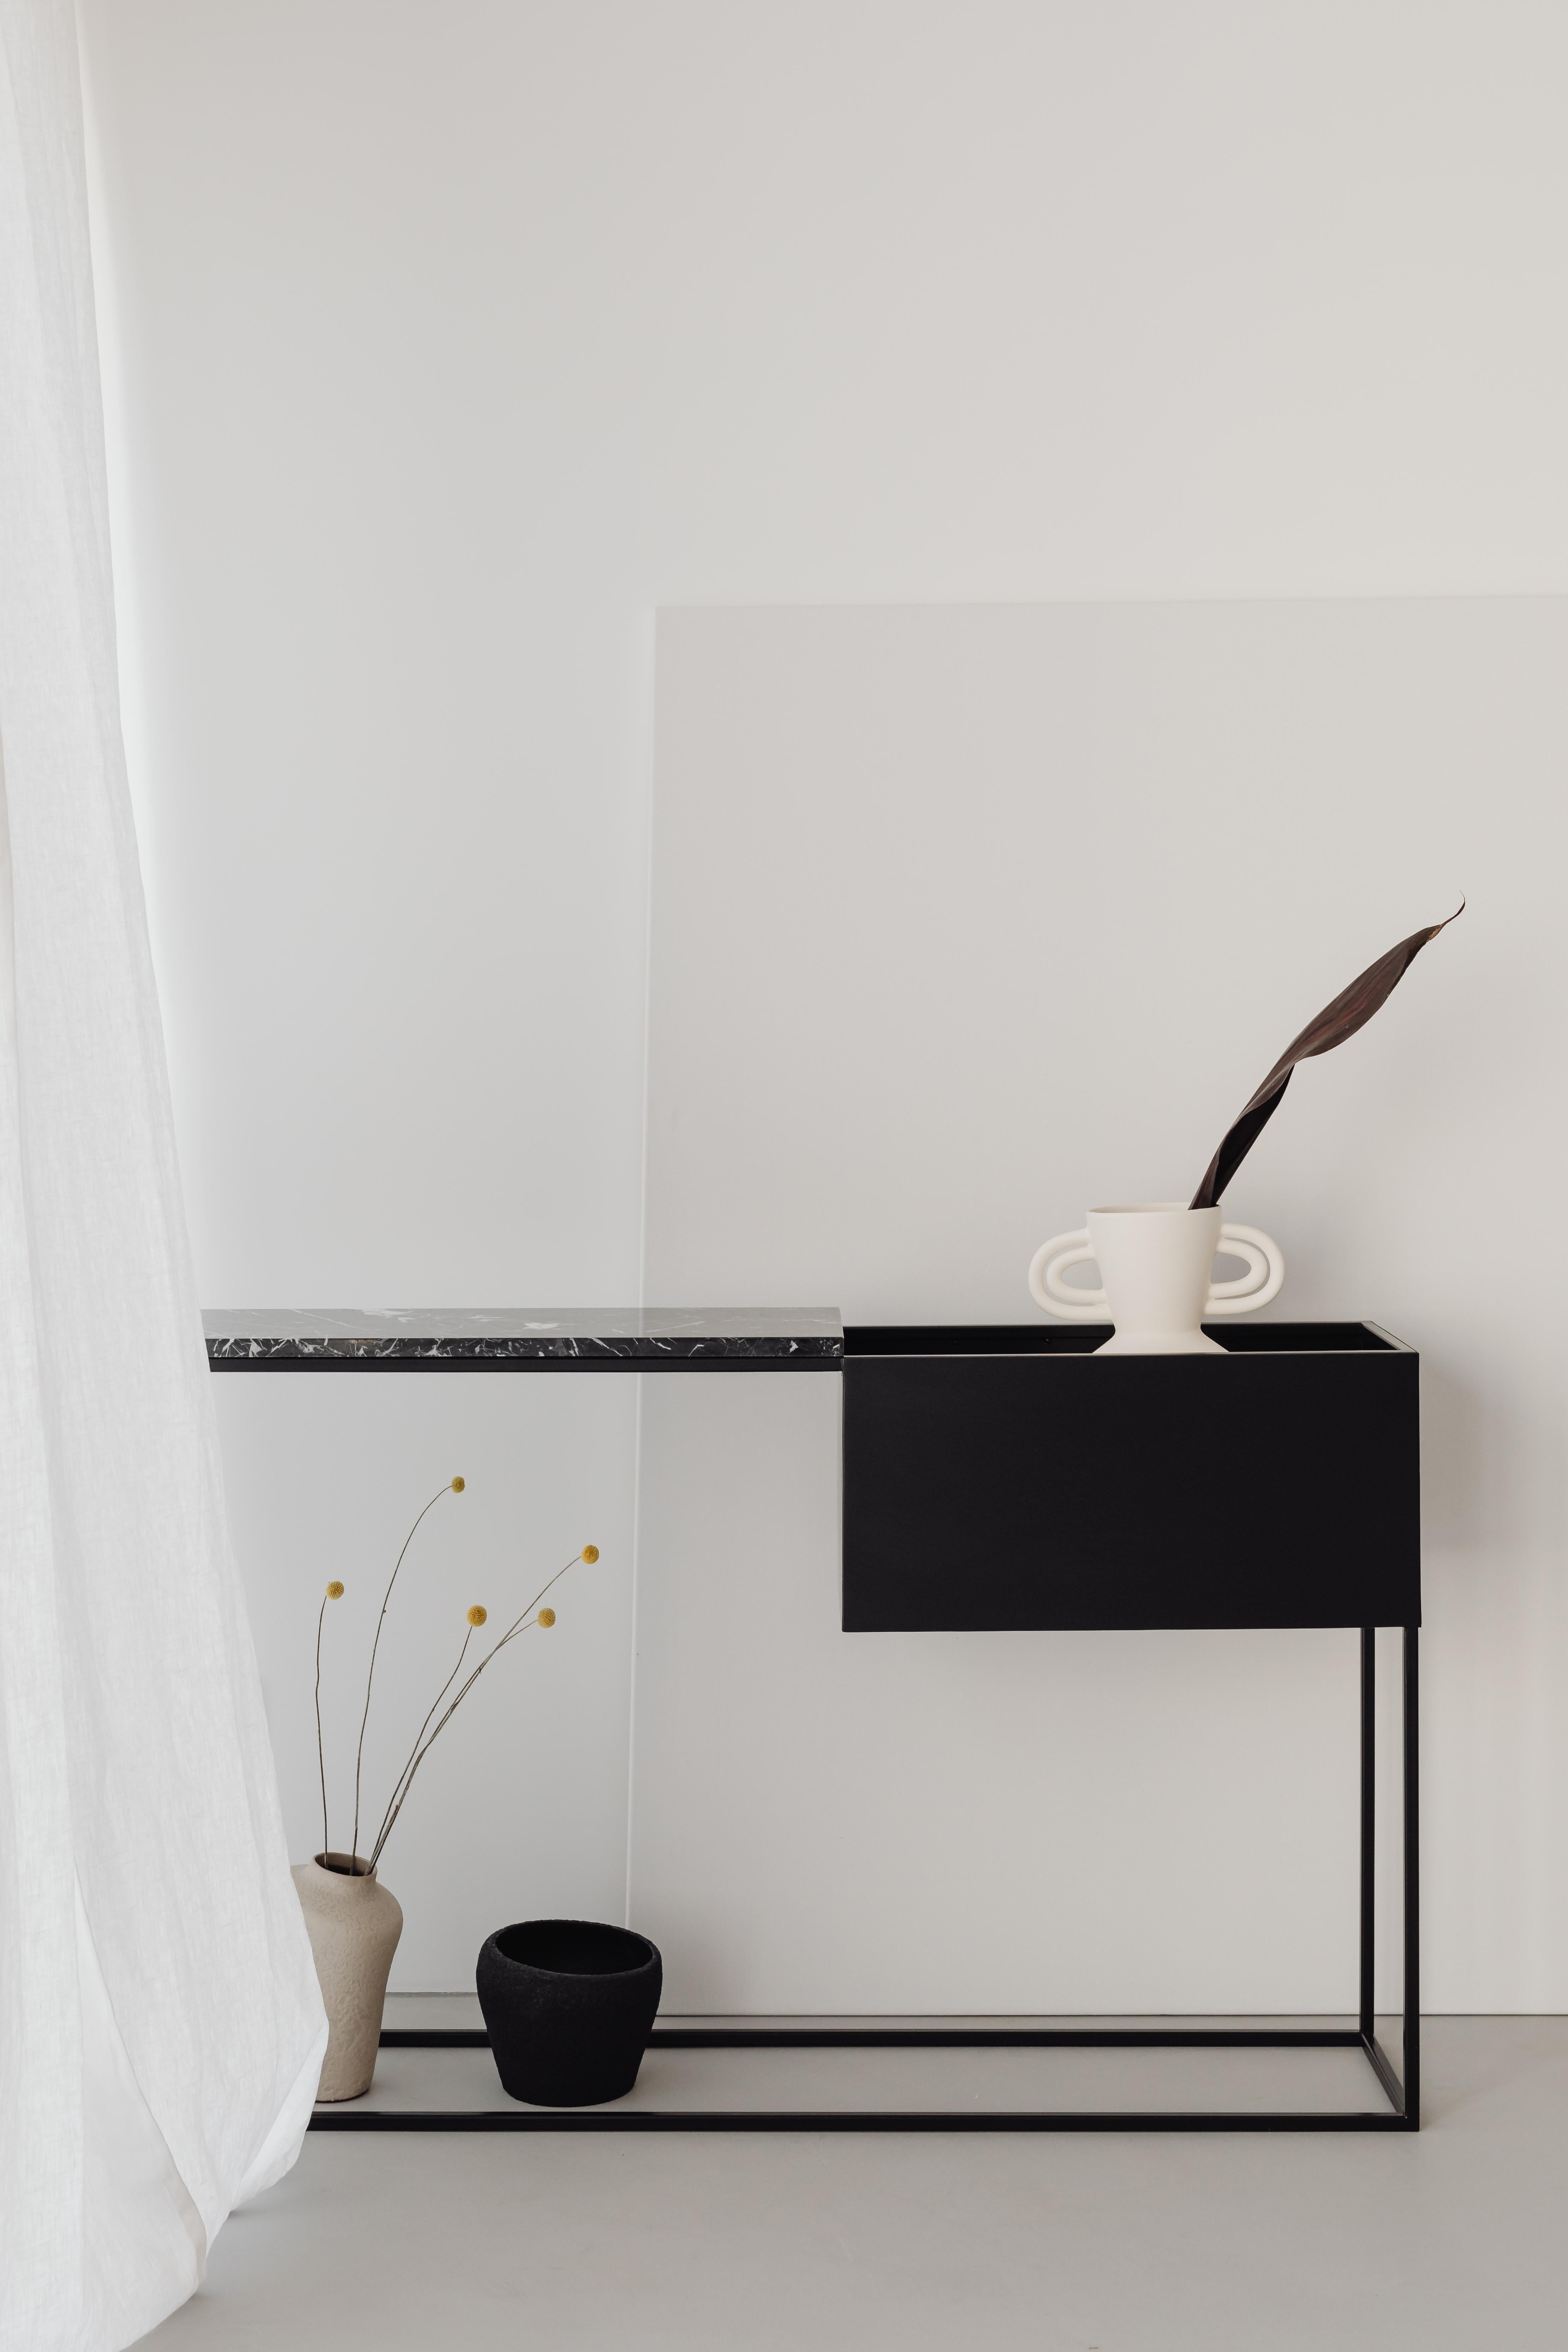 BOX MAXI ist ein schönes Beispiel für geniales modernes Design. Er ist eine gute Wahl für Ihren Flur, Ihr Wohnzimmer oder Ihr Schlafzimmer. Es bietet eine sehr funktionelle Kombination aus Marmorplatte und abgesenktem Regal - zwei unterschiedliche,